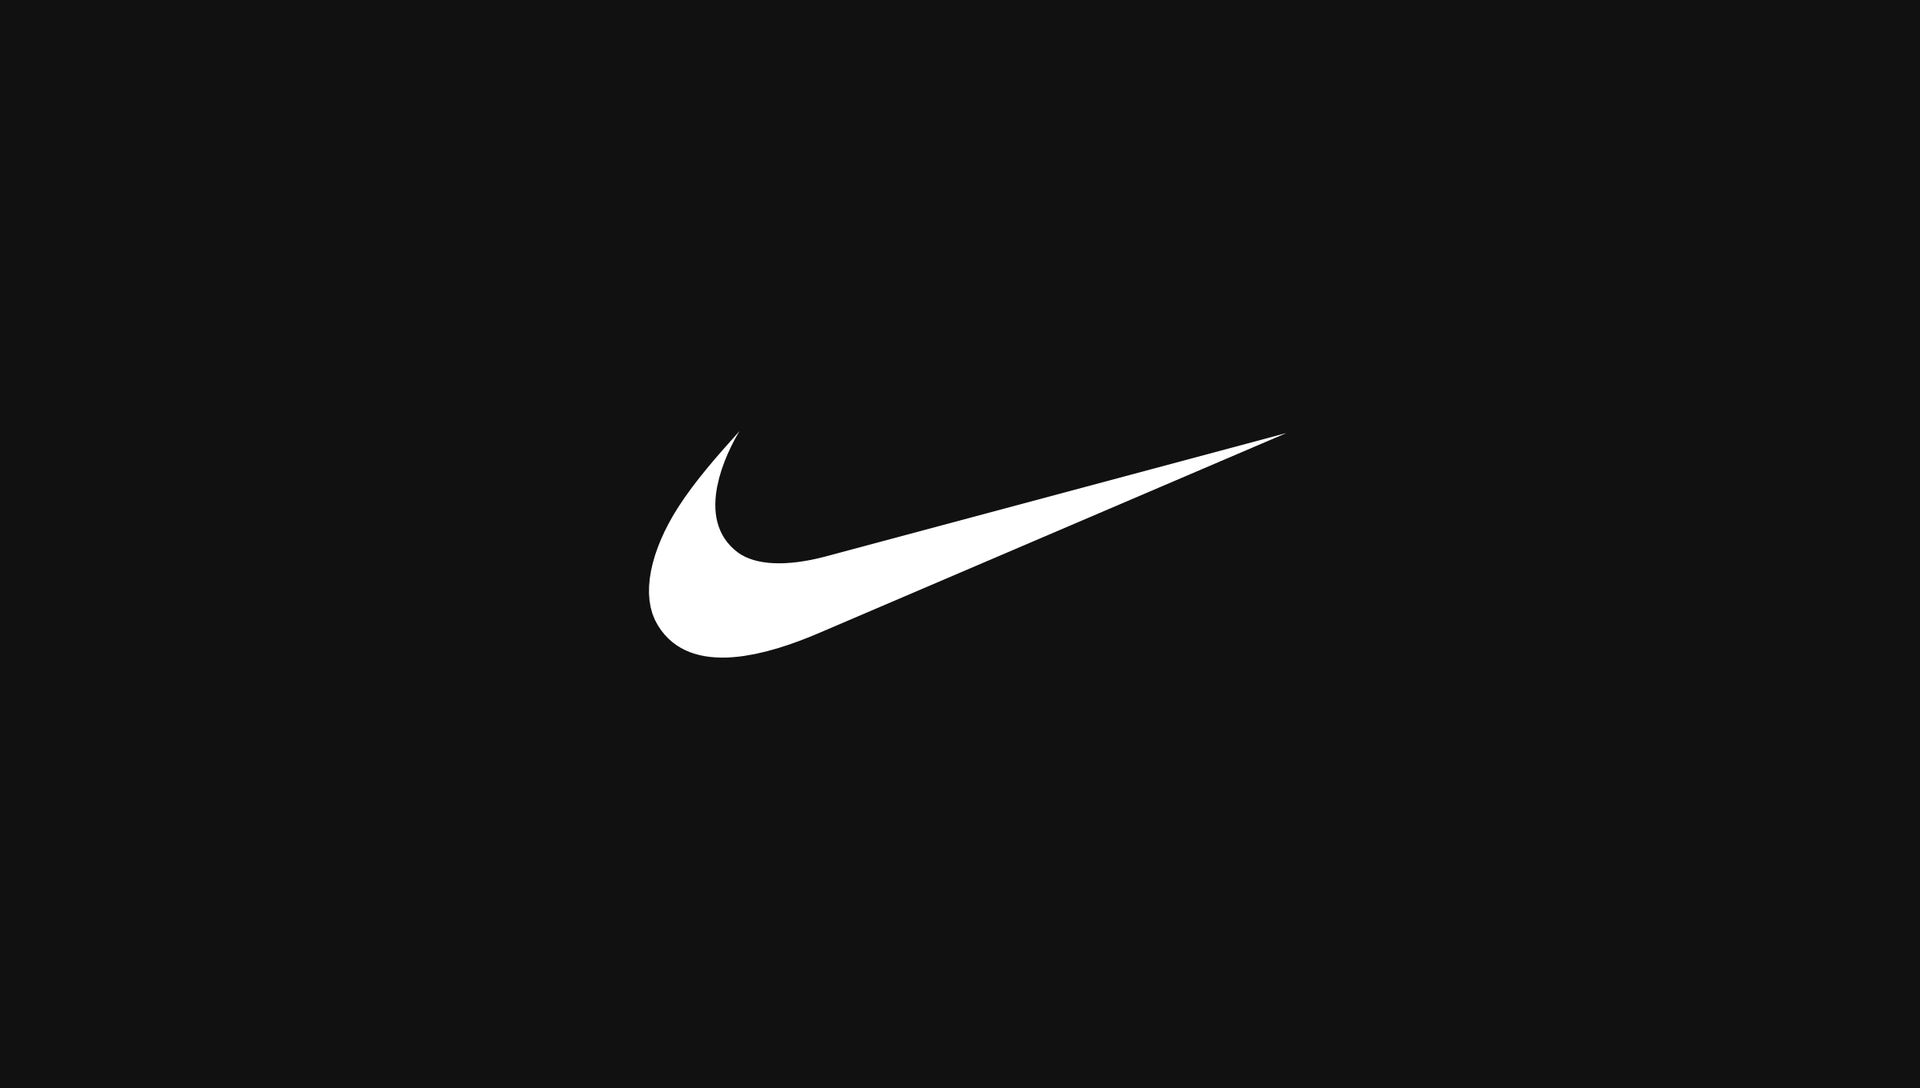 La prochaine publicité Nike pourrait naître du cerveau d'un ordinateur. © Nike